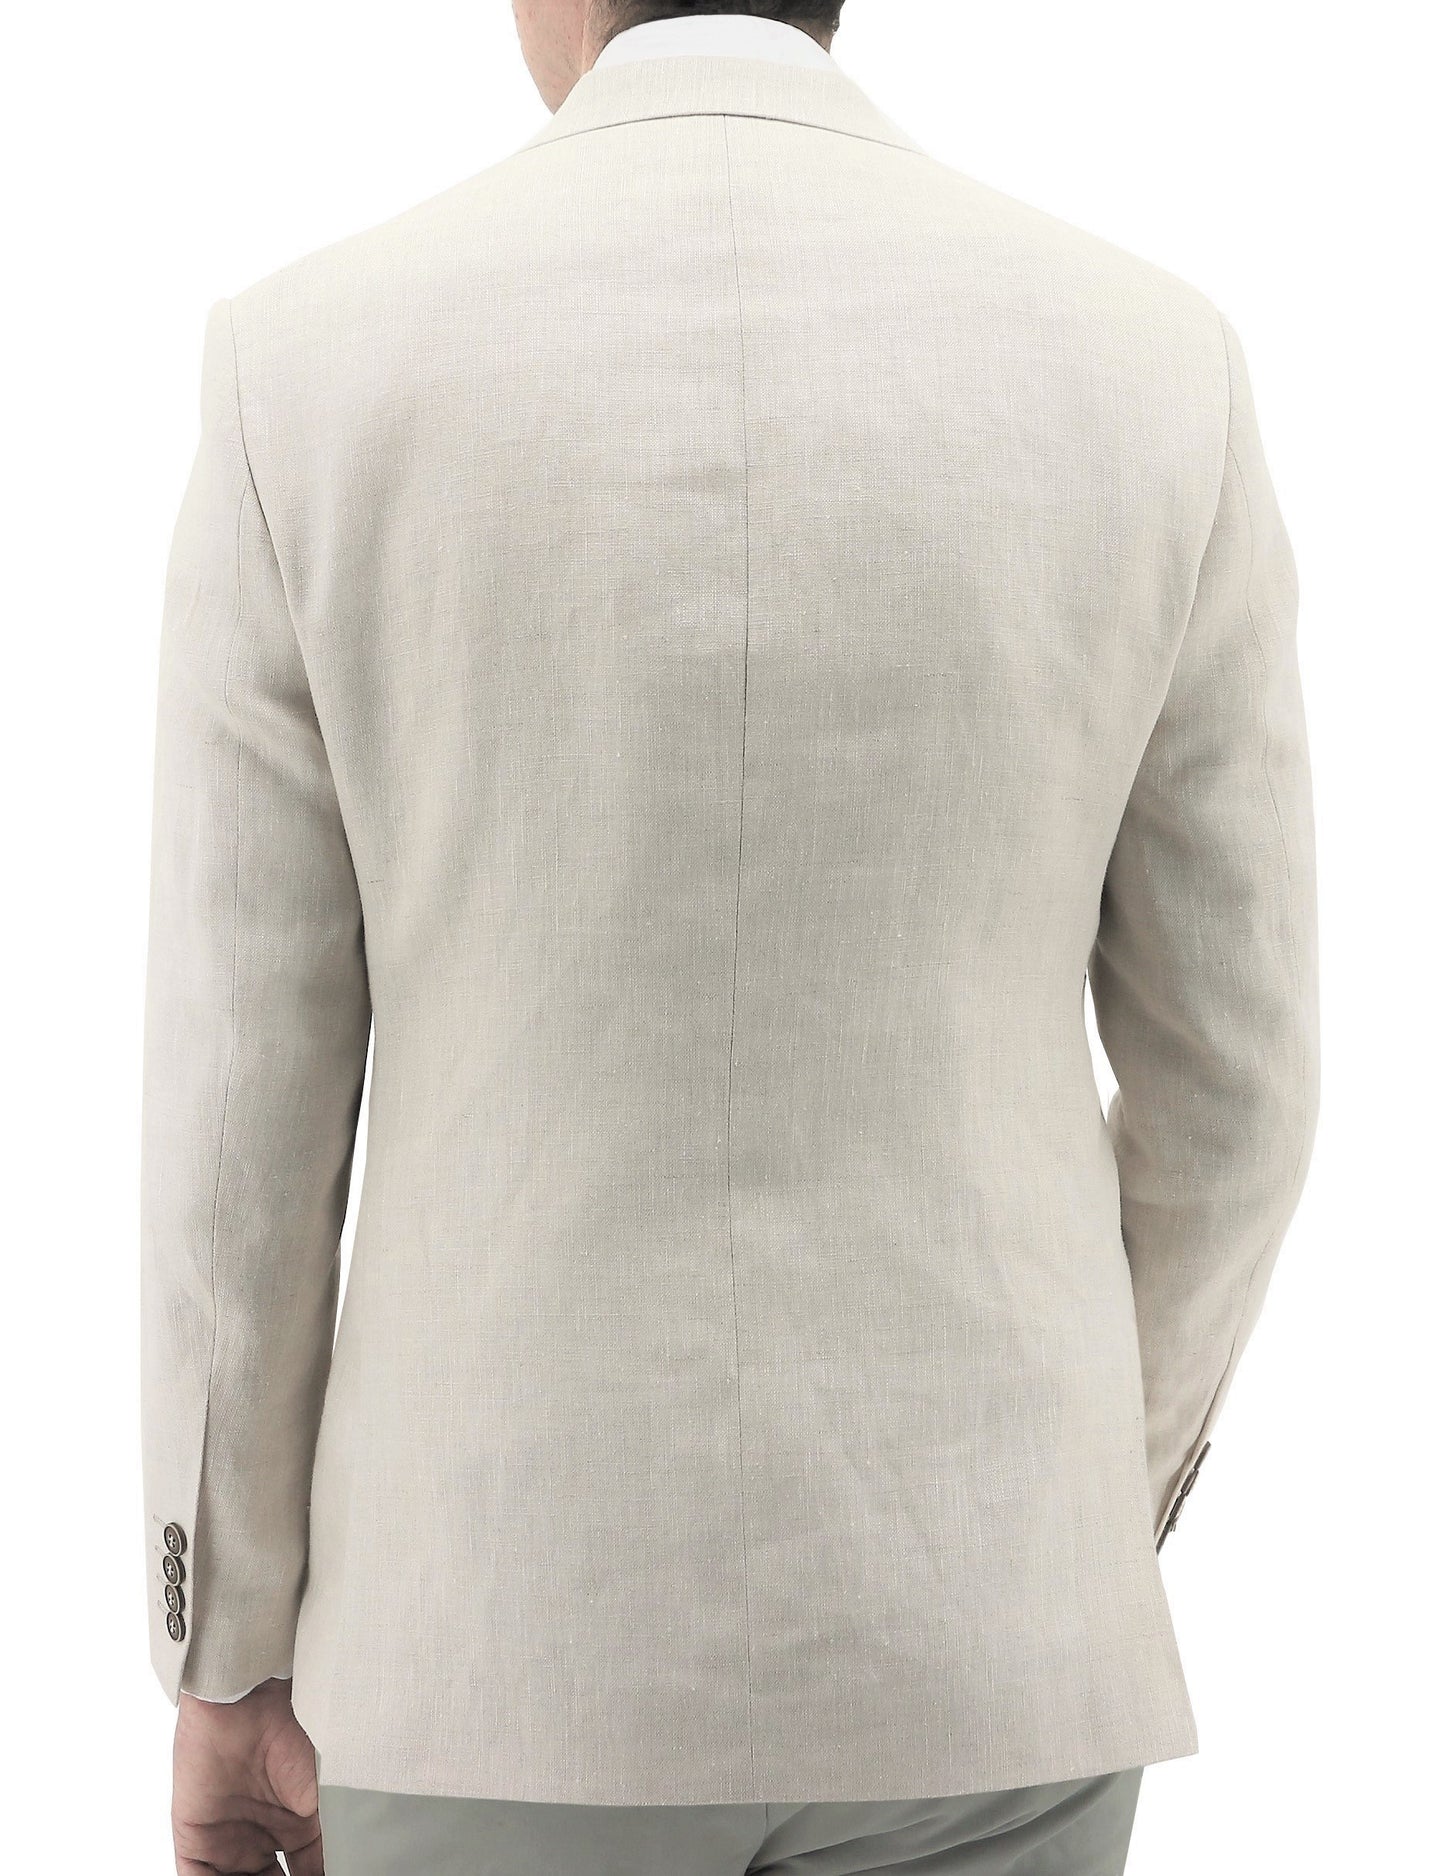 Shape 339 Sand Linen Suit Jacket